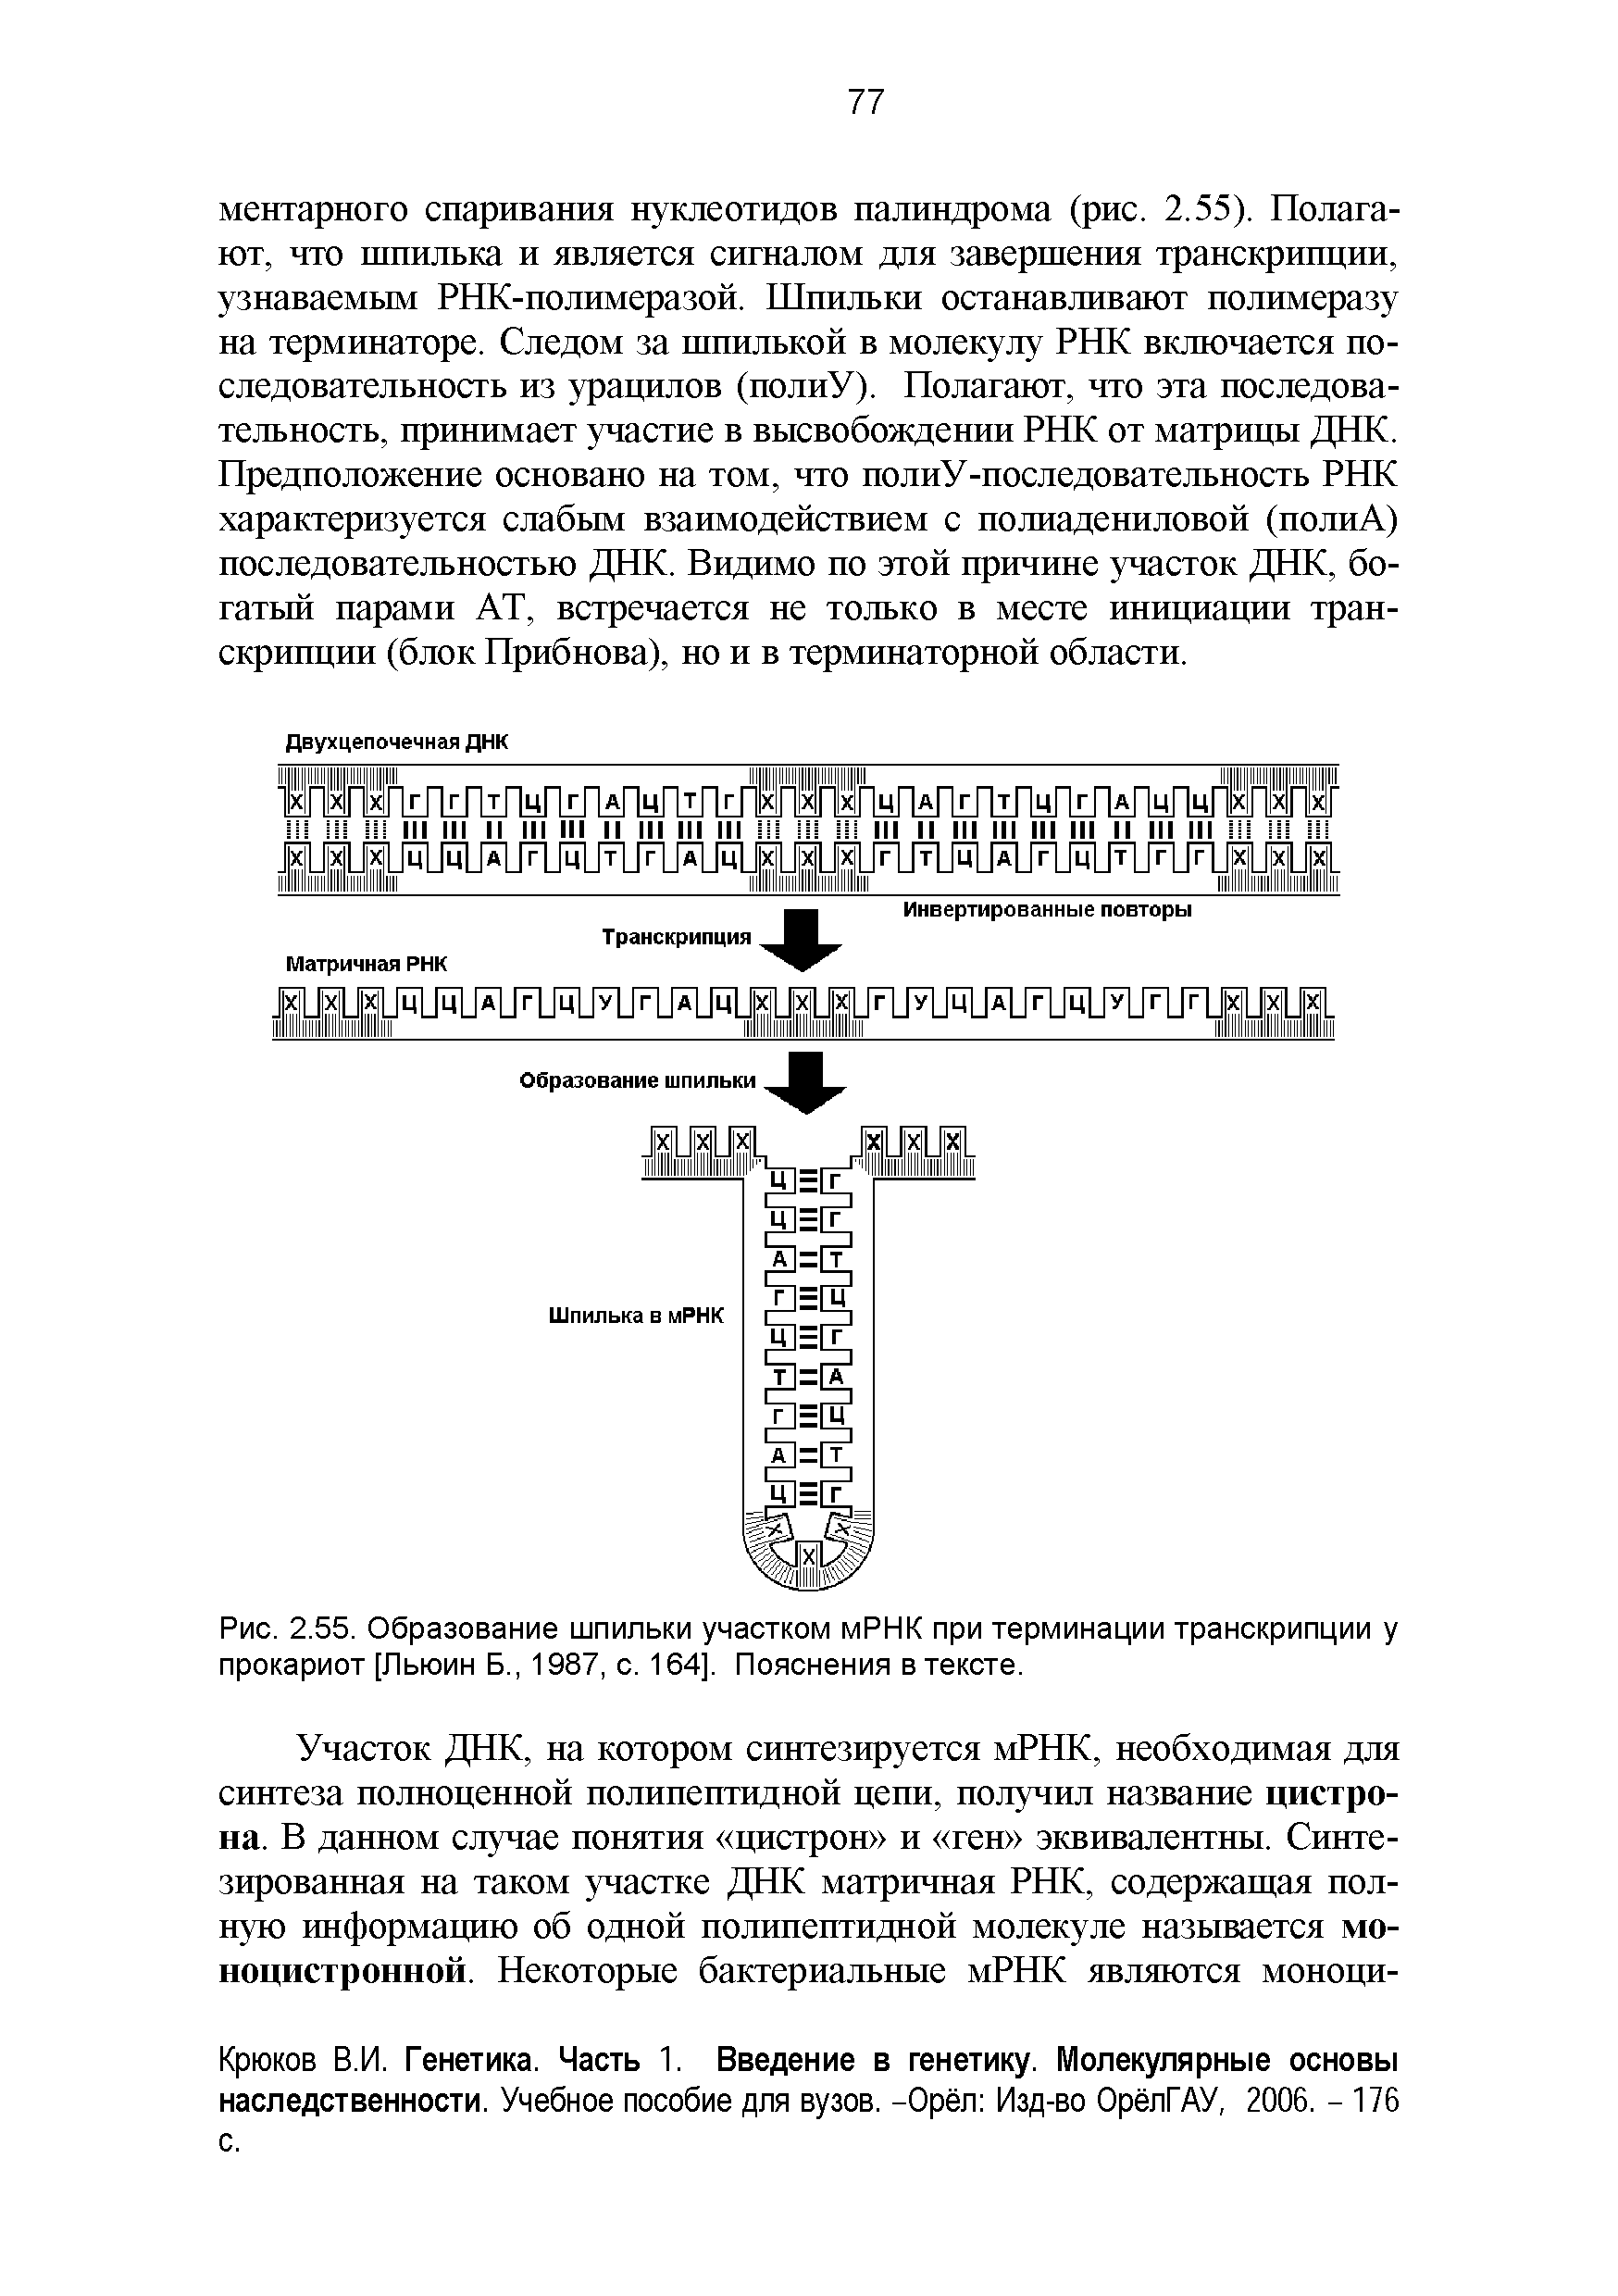 Рис. 2.55. Образование шпильки участком мРНК при терминации транскрипции у прокариот [Льюин Б., 1987, с. 164]. Пояснения в тексте.